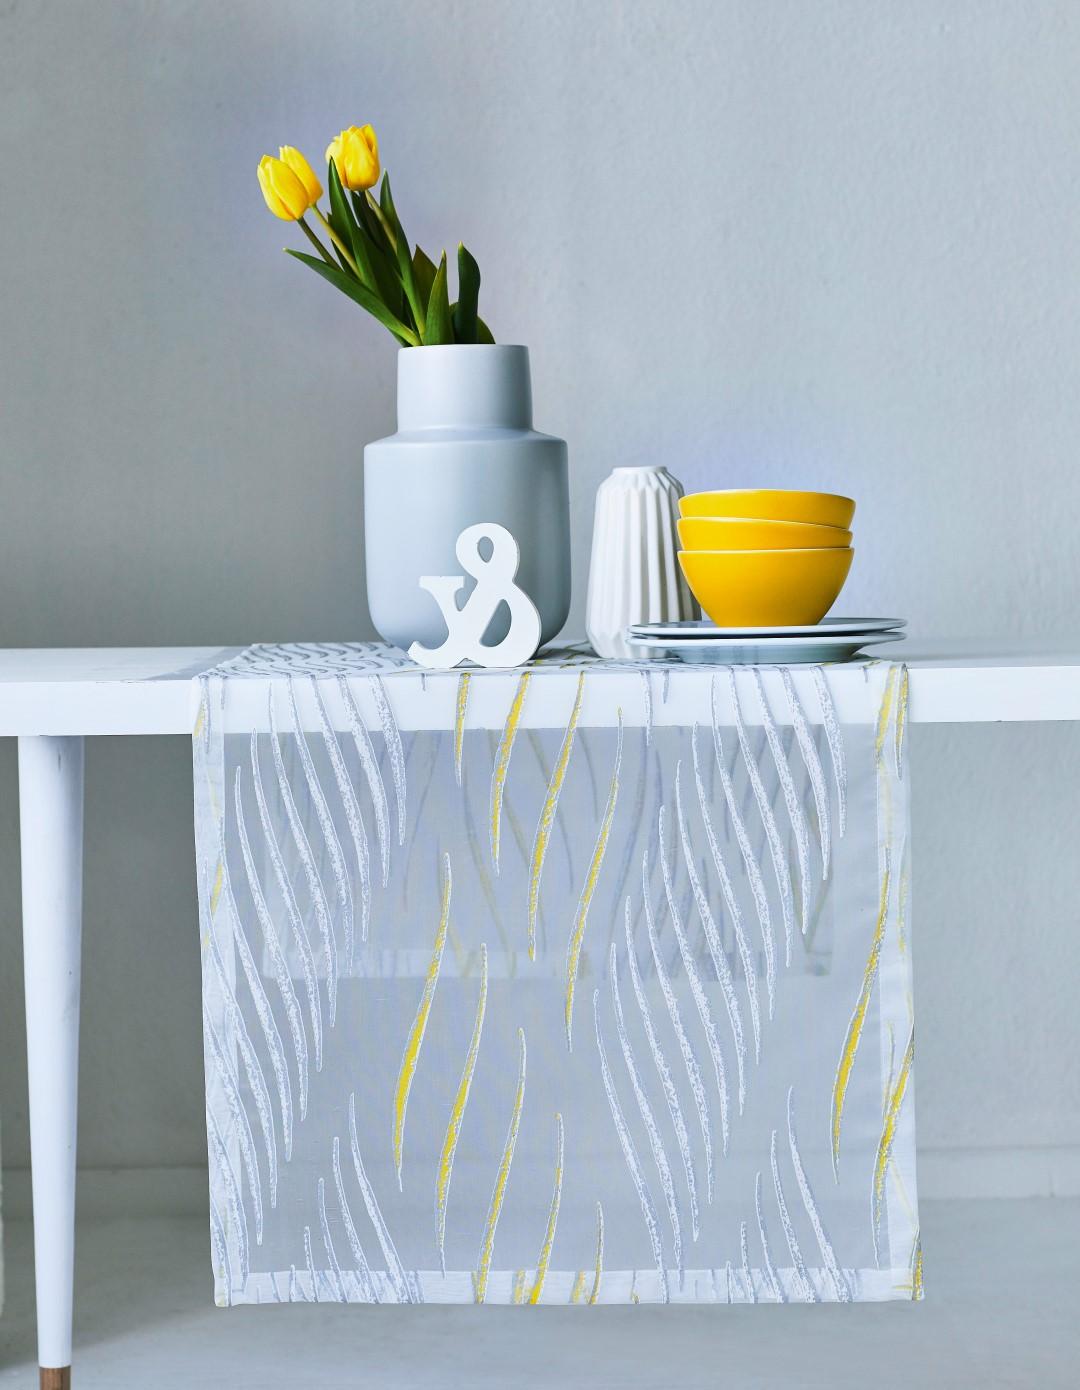 eleganter Transparentstoff als leicht-luftiger Läufer mit grafischem Muster
#Apelt #Textilien #Tischläufer #Wohnen